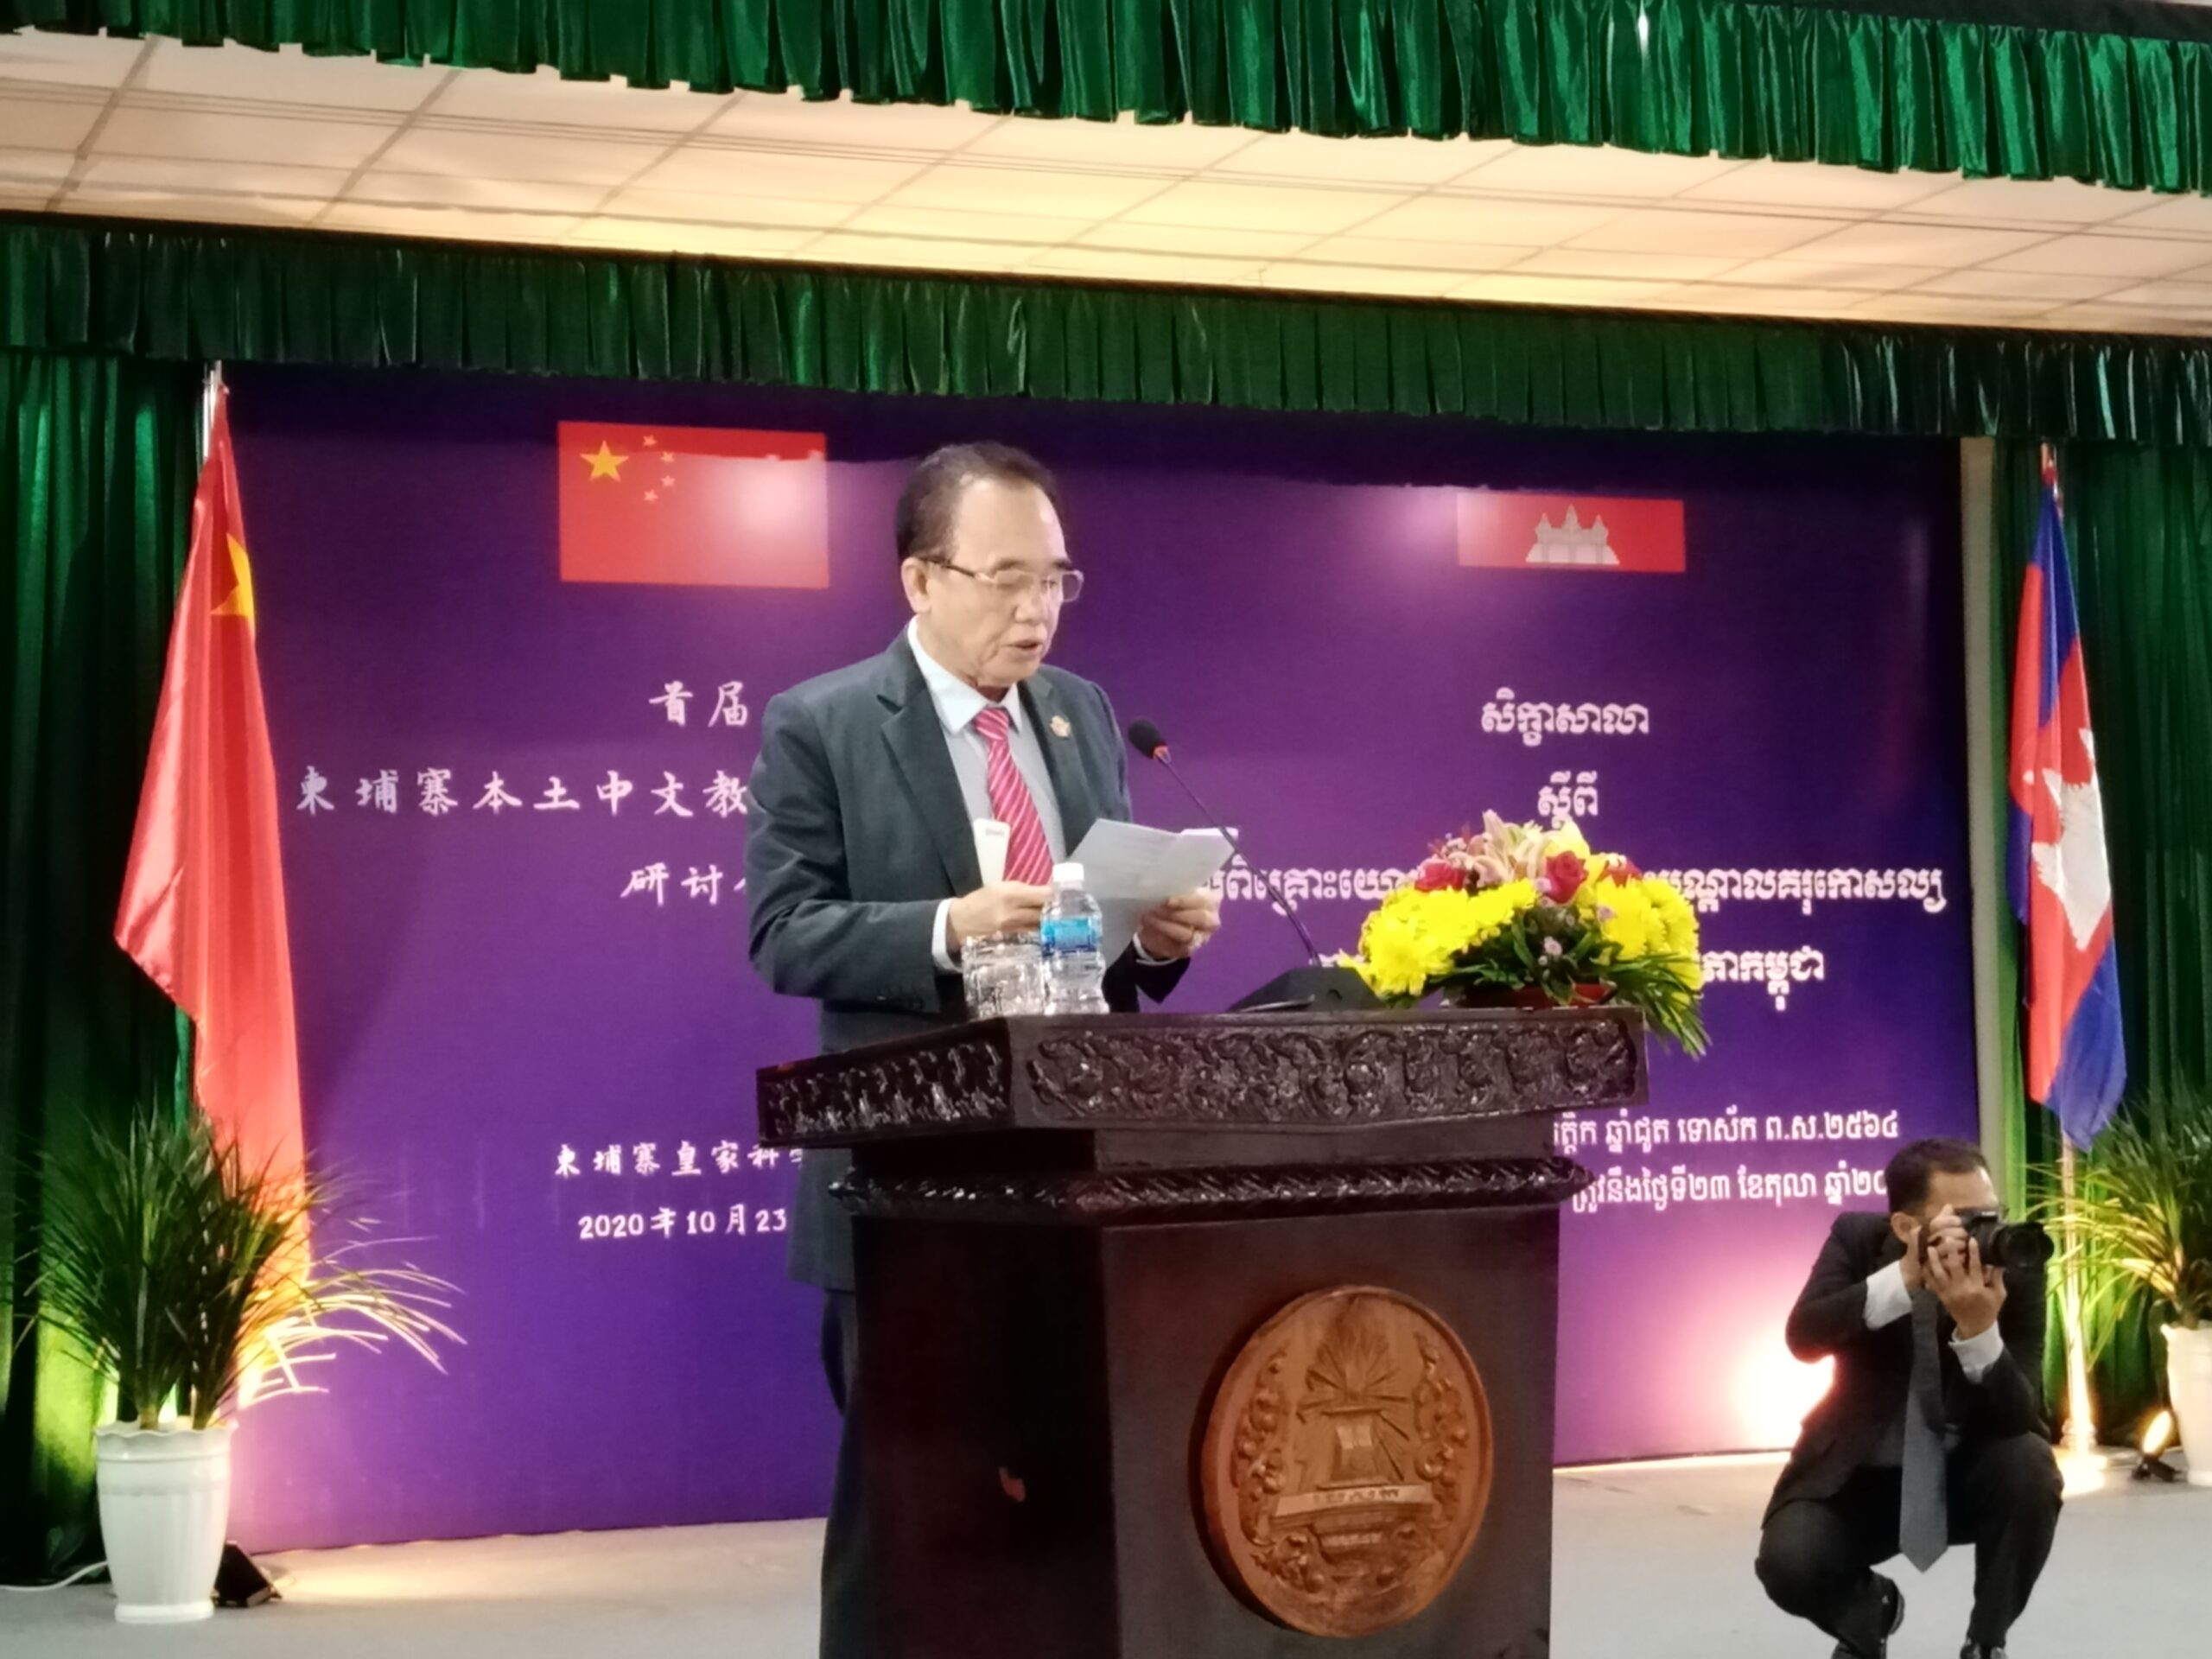 首届柬本土中文教育与人才培训研讨会成功举行